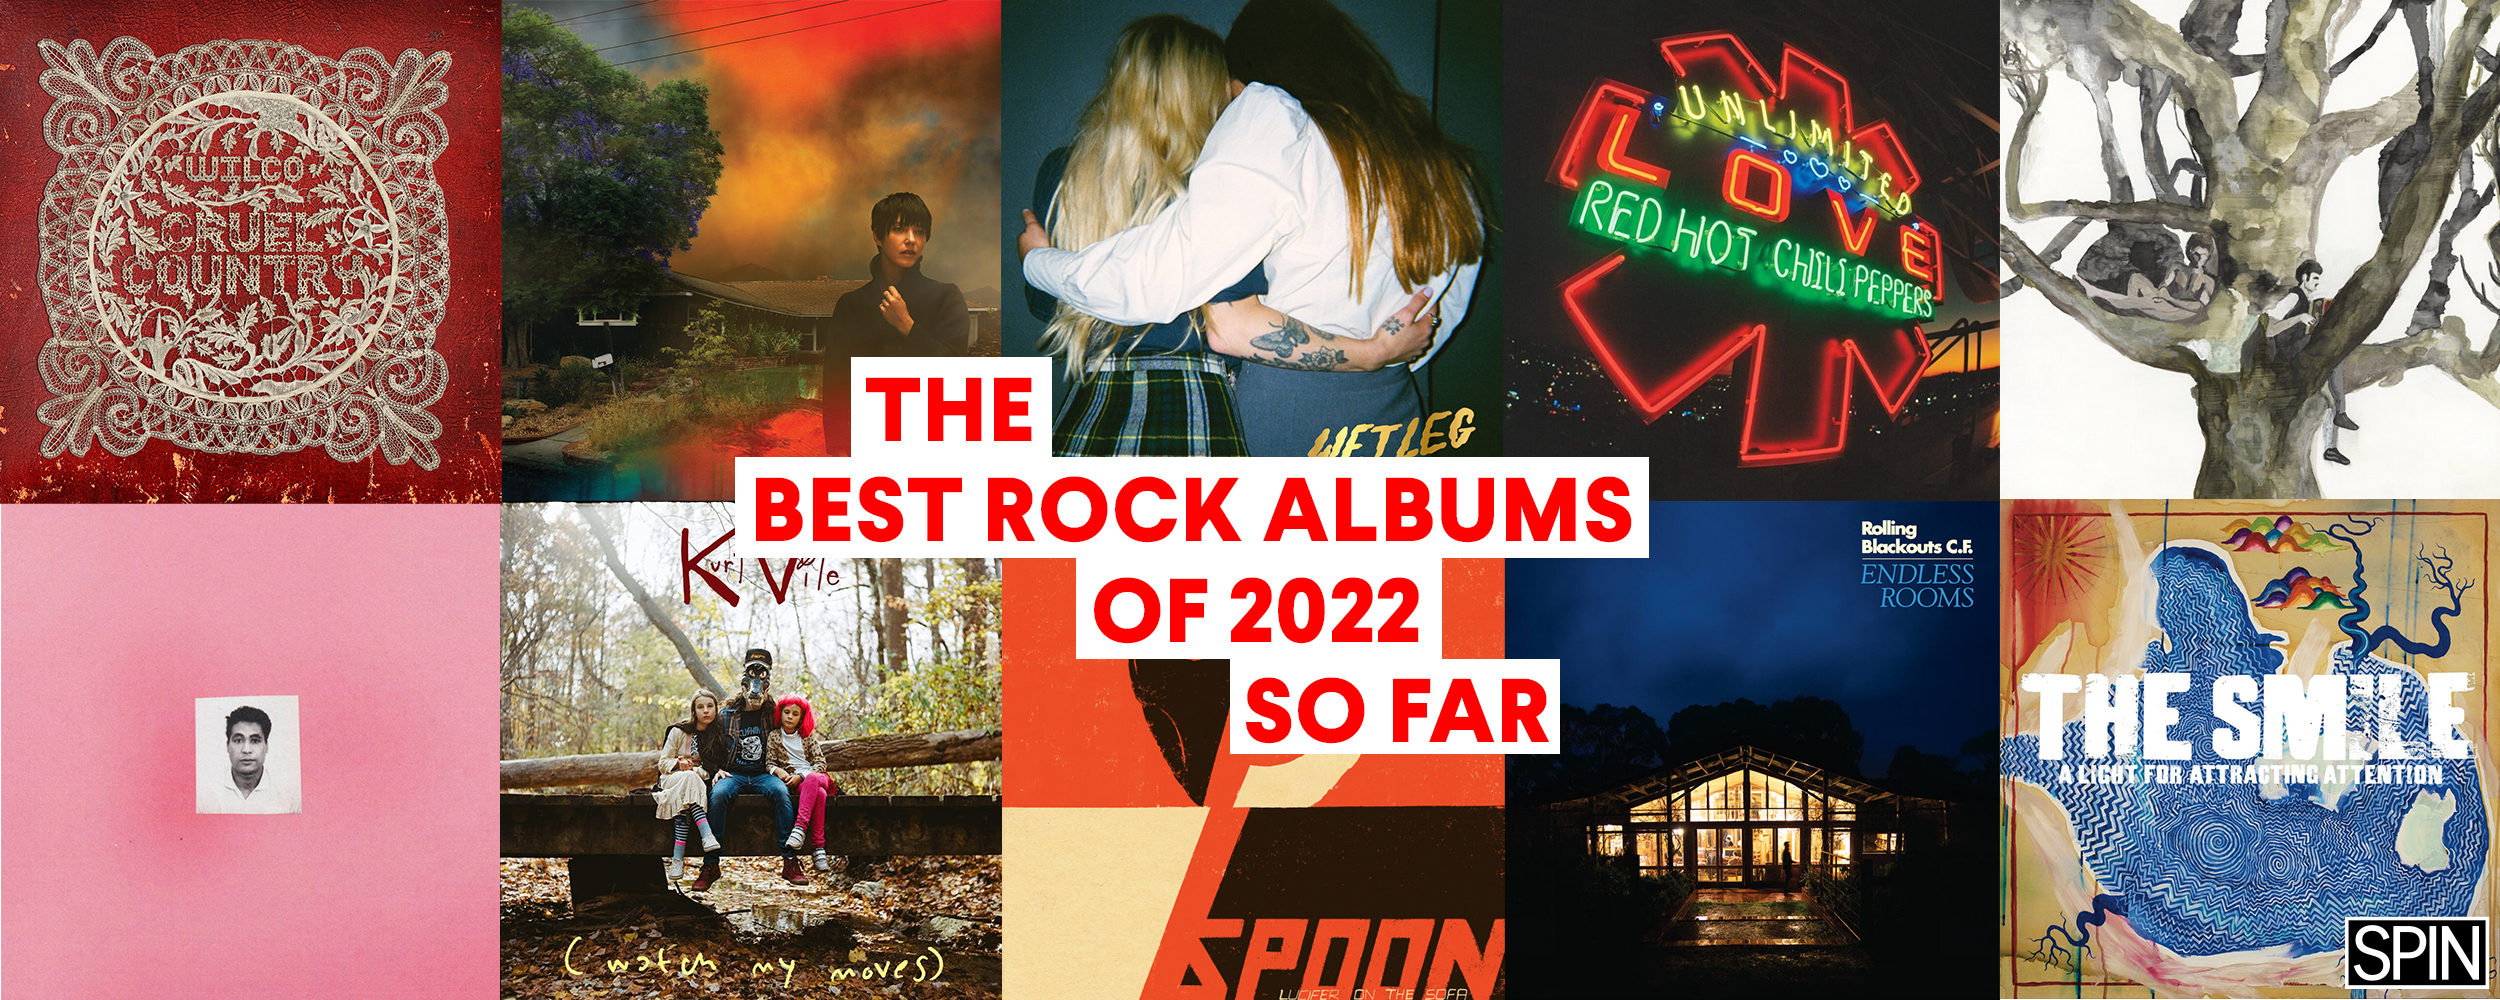 Best rock albums 2022